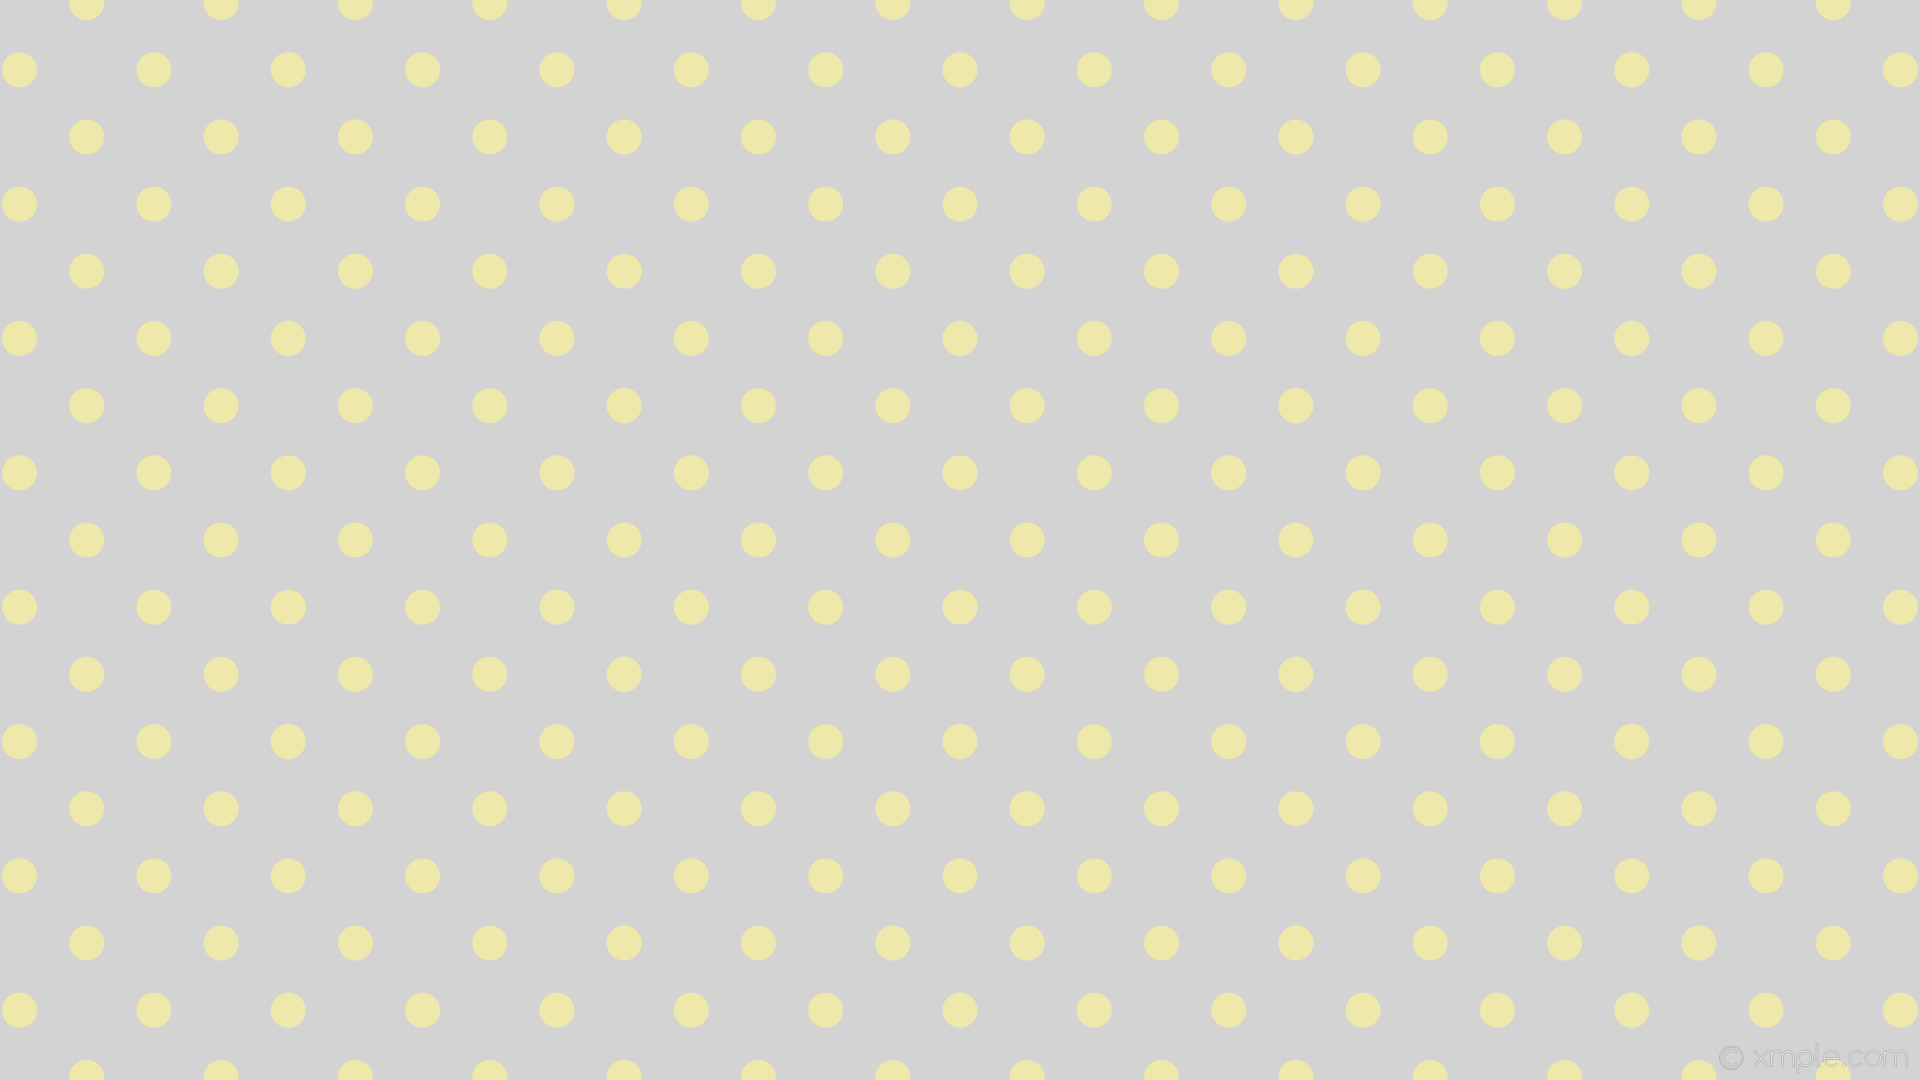 1920x1080 wallpaper grey dots spots polka yellow light gray pale goldenrod #d3d3d3  #eee8aa 225Â°